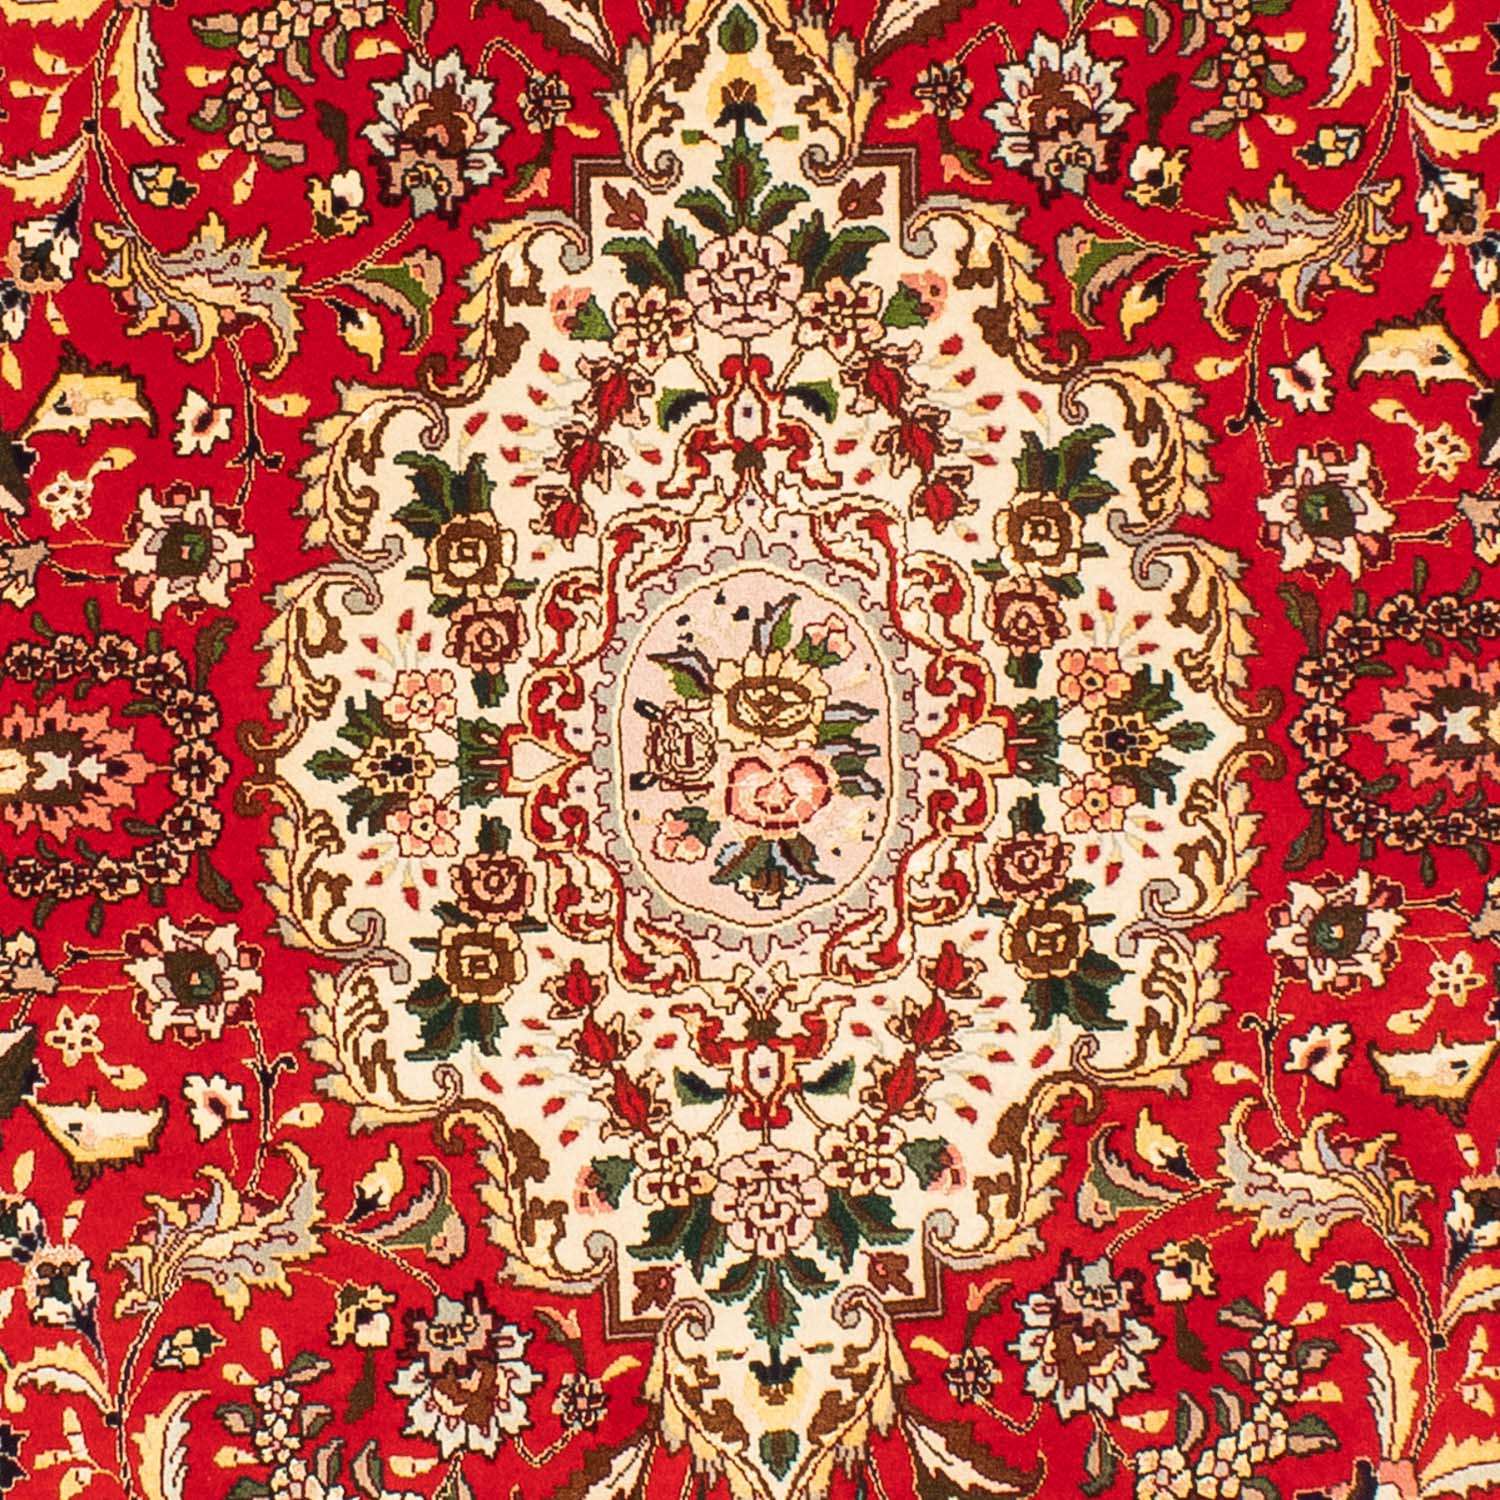 Tapete Persa - Tabriz - Royal oval  - 200 x 130 cm - vermelho